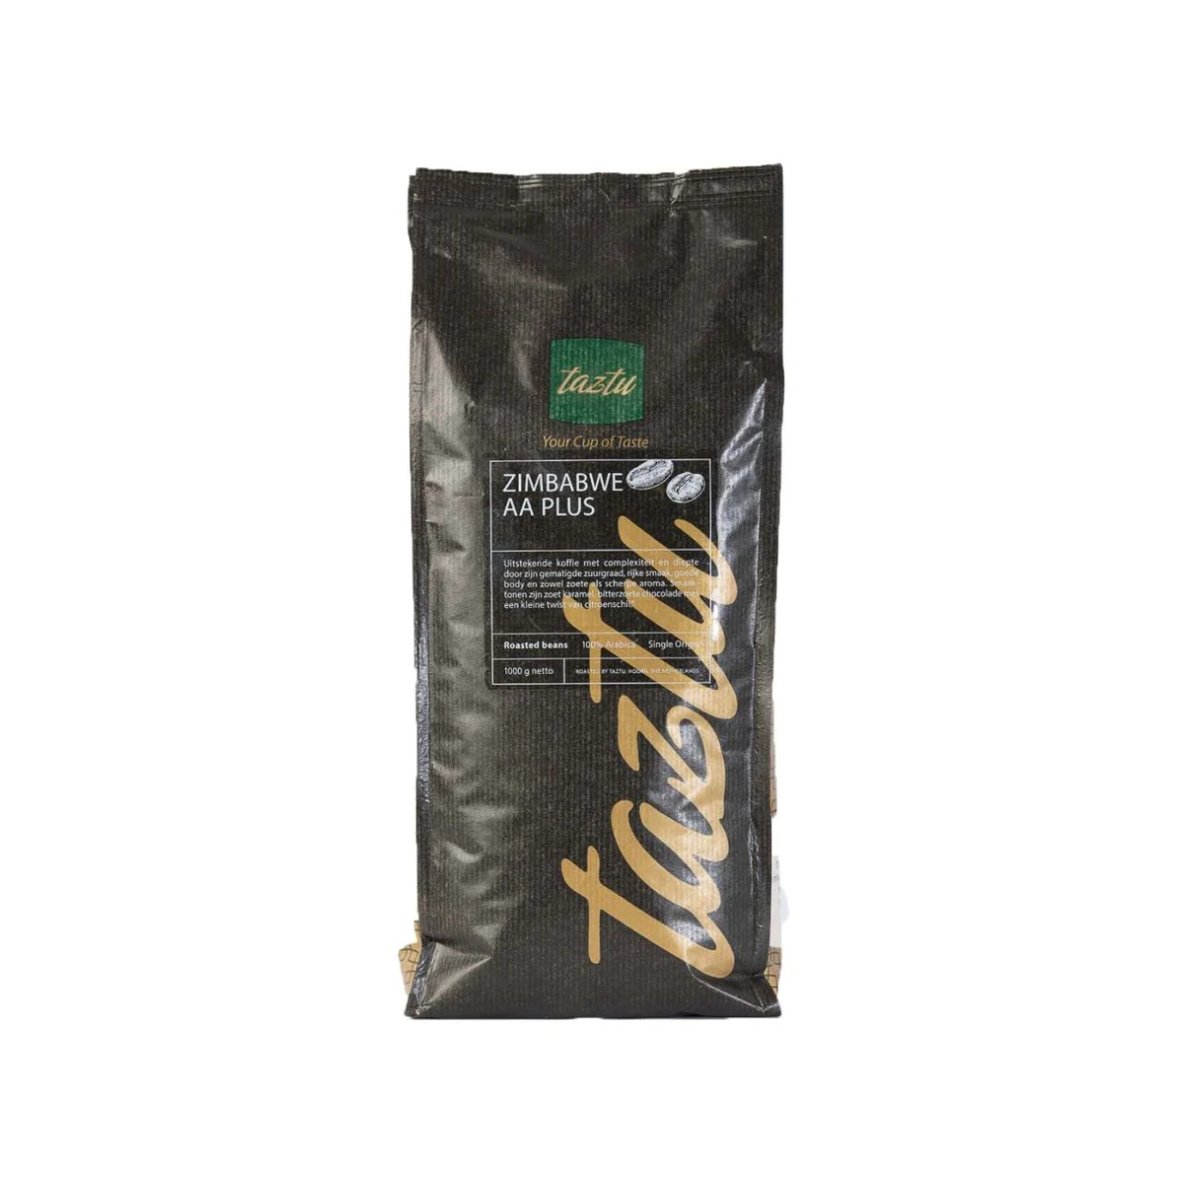 Taztu Zimbabwe AA Plus arabica koffiebonen medium roast in donkere zak verpakt Arte dell' espressO 6096528571553